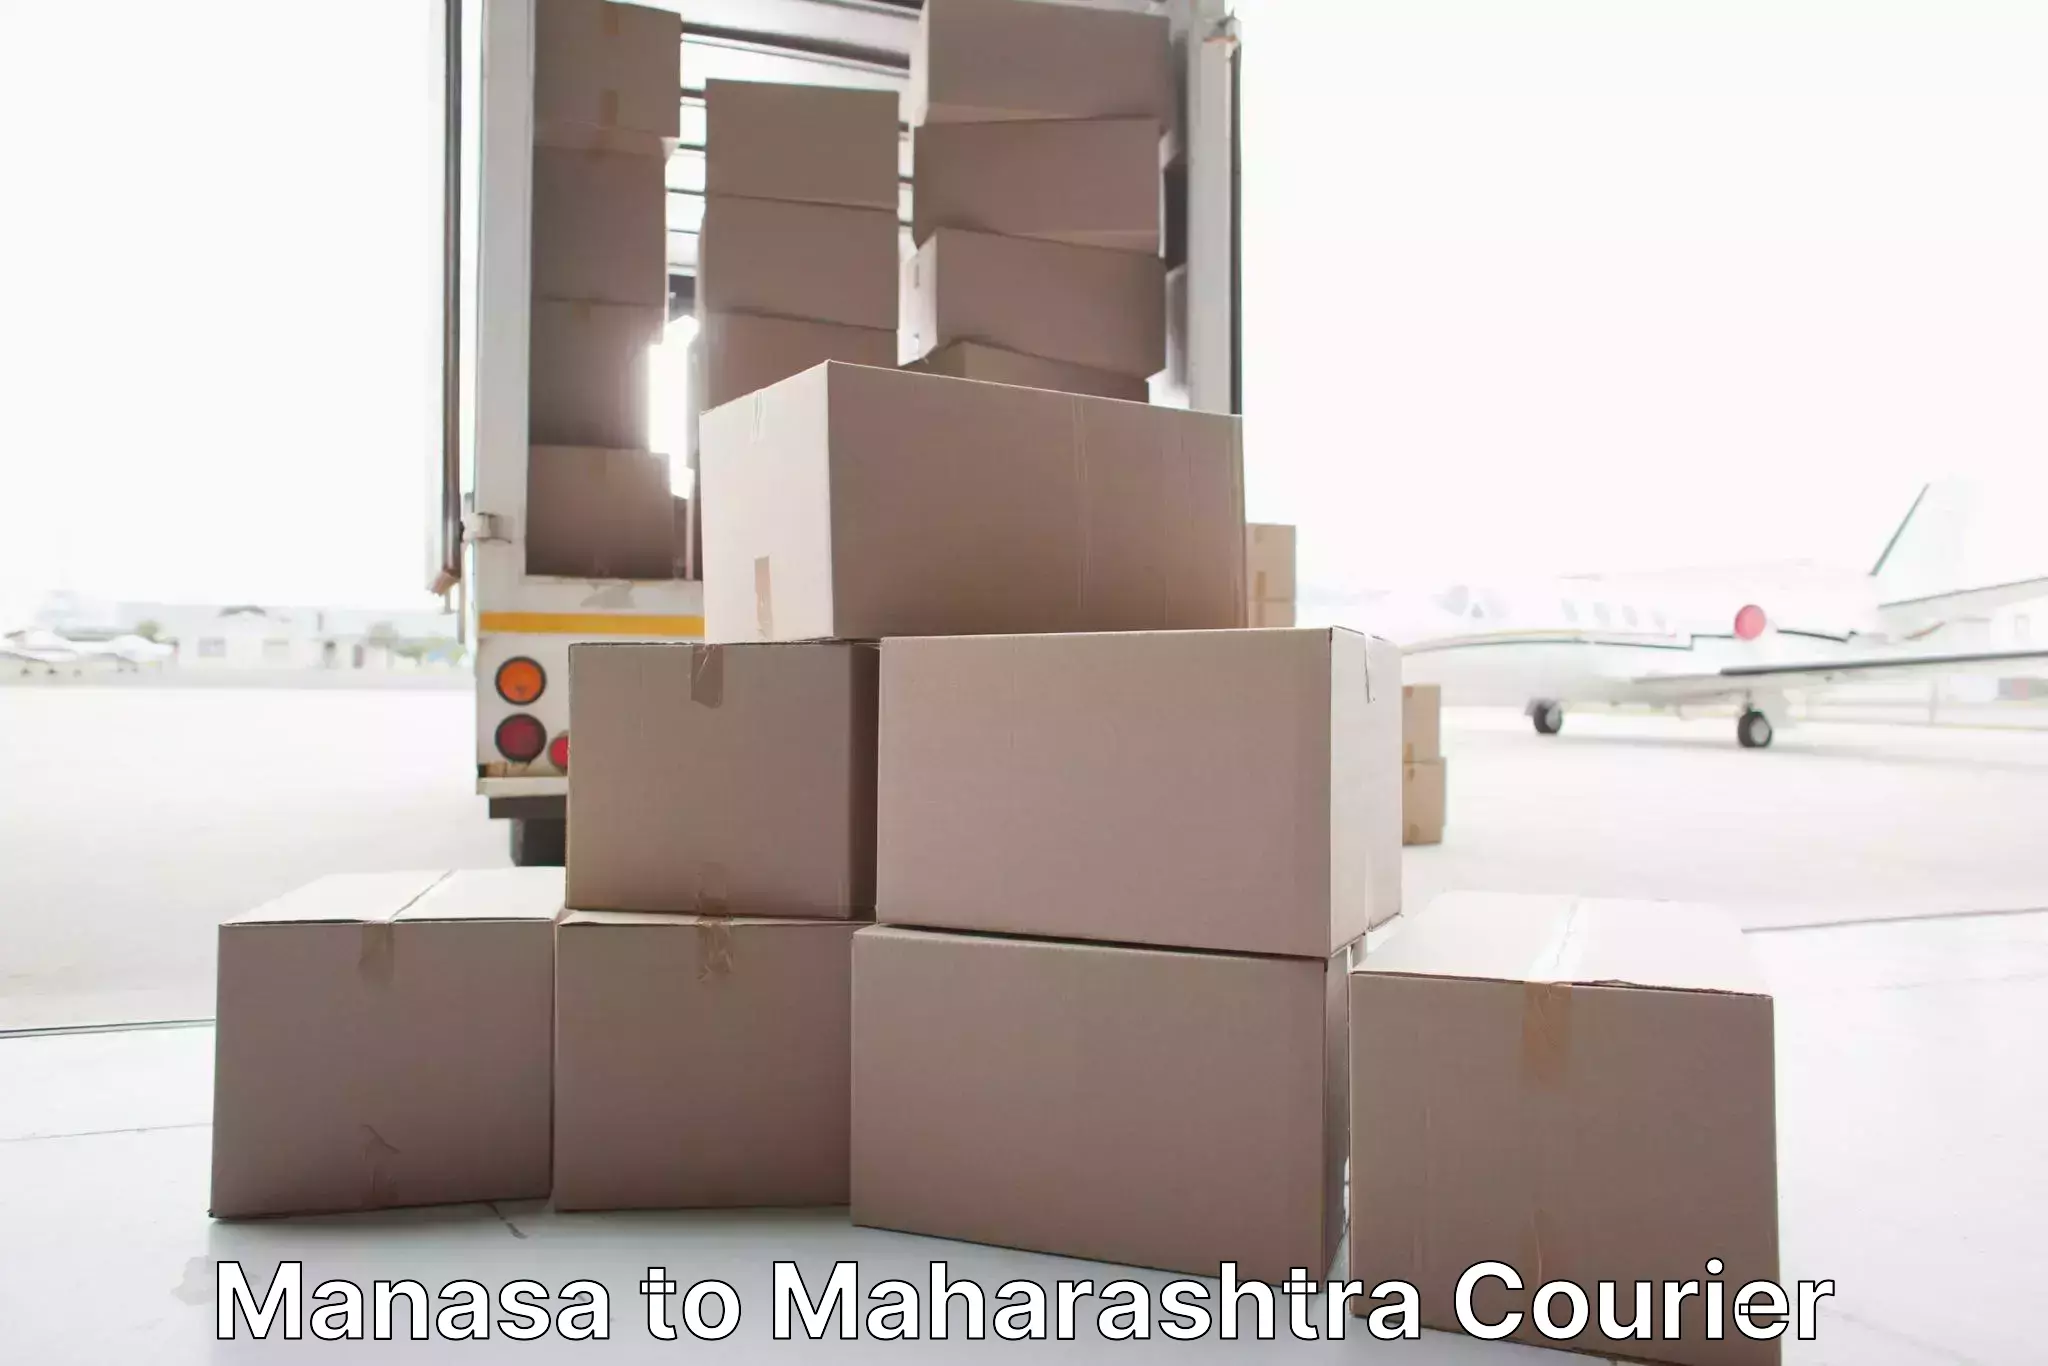 Quality relocation services Manasa to Maharashtra